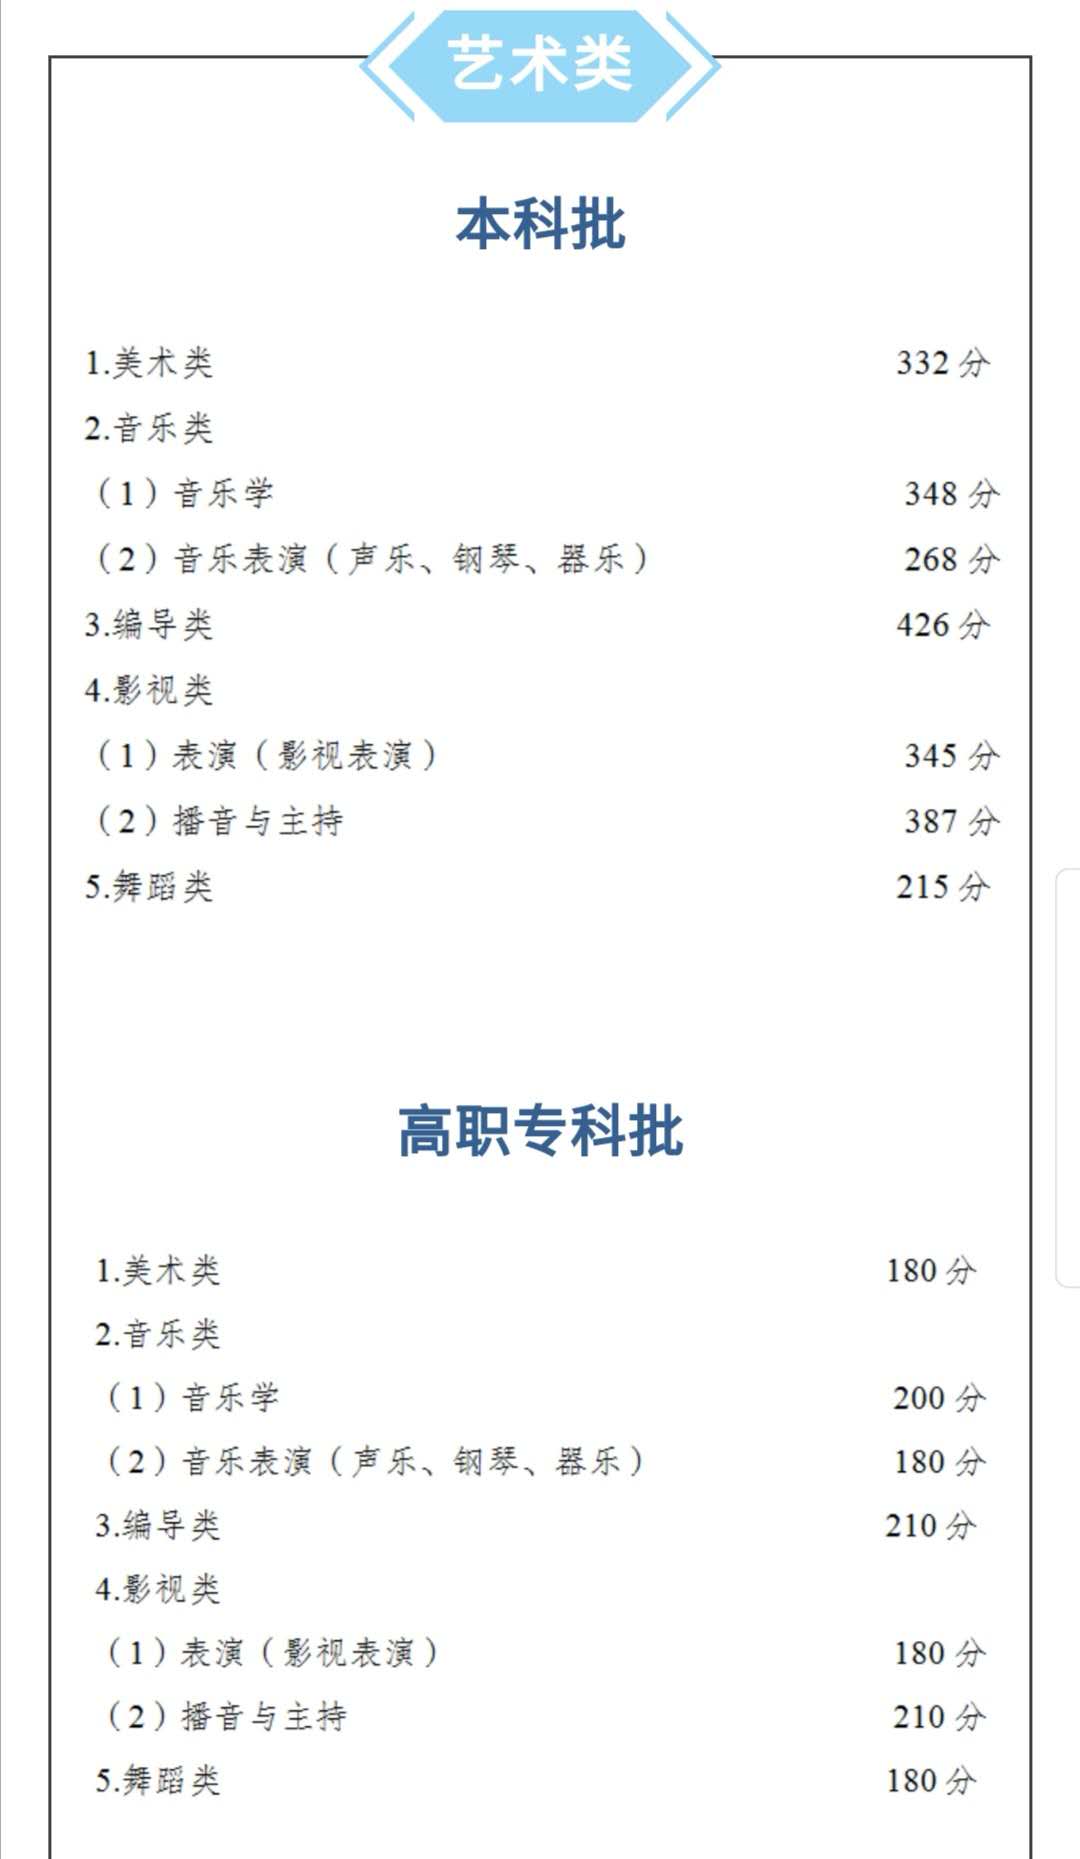 重庆公布高考分数线 文科一本536分 理科一本500分 千龙网 中国首都网